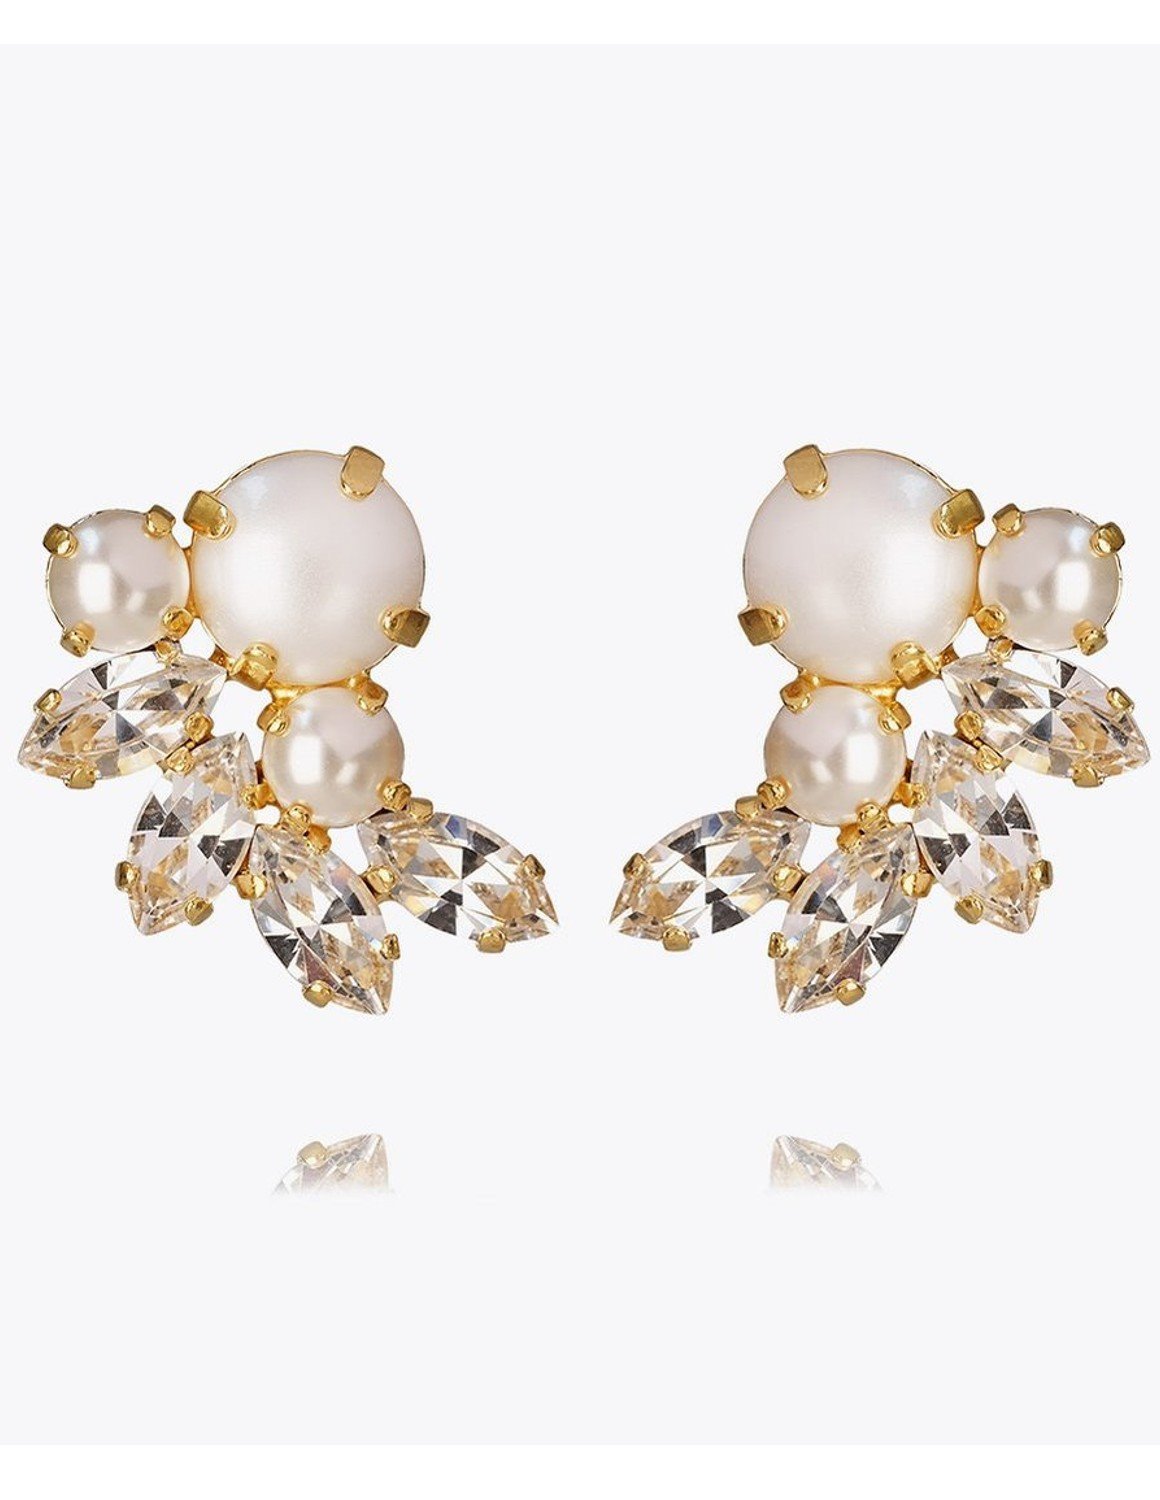 Caroline Svedbom Electra Earrings in Pearl Crystal.jpg